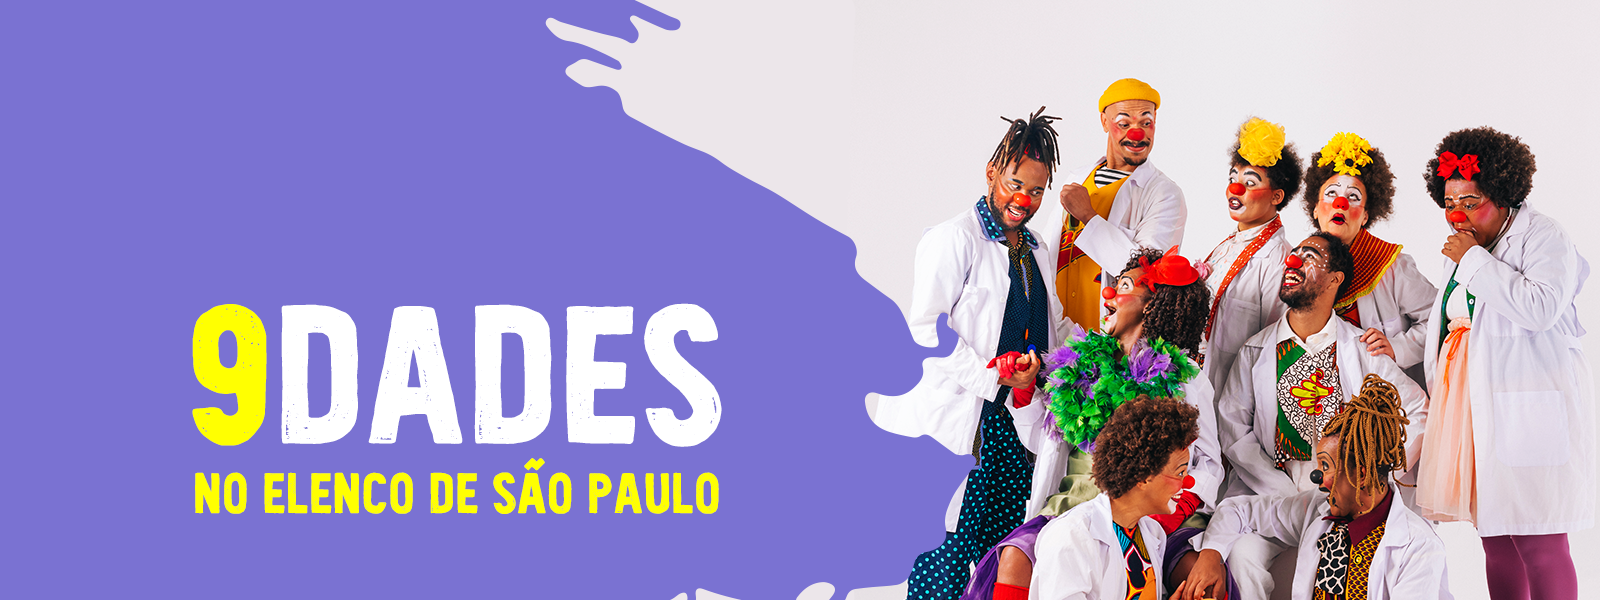 Doutoras da Alegria apresenta novos artistas do elenco paulista